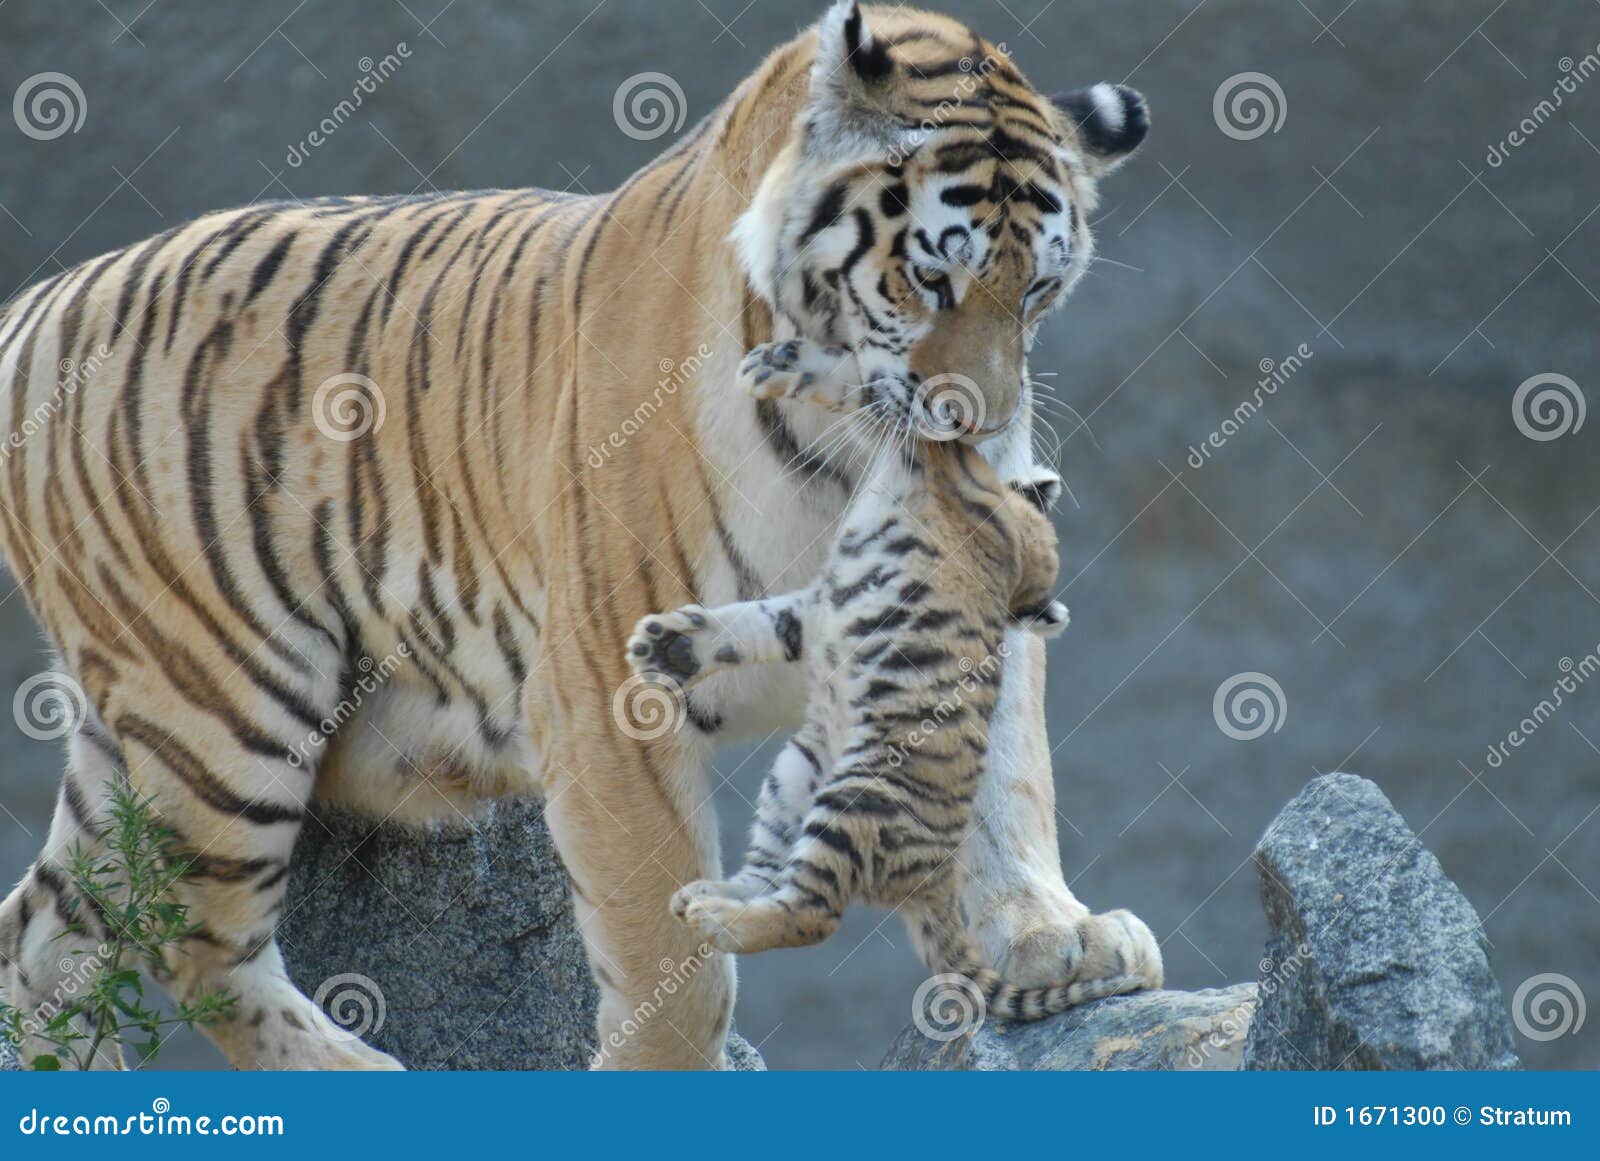 tigress hides cub.